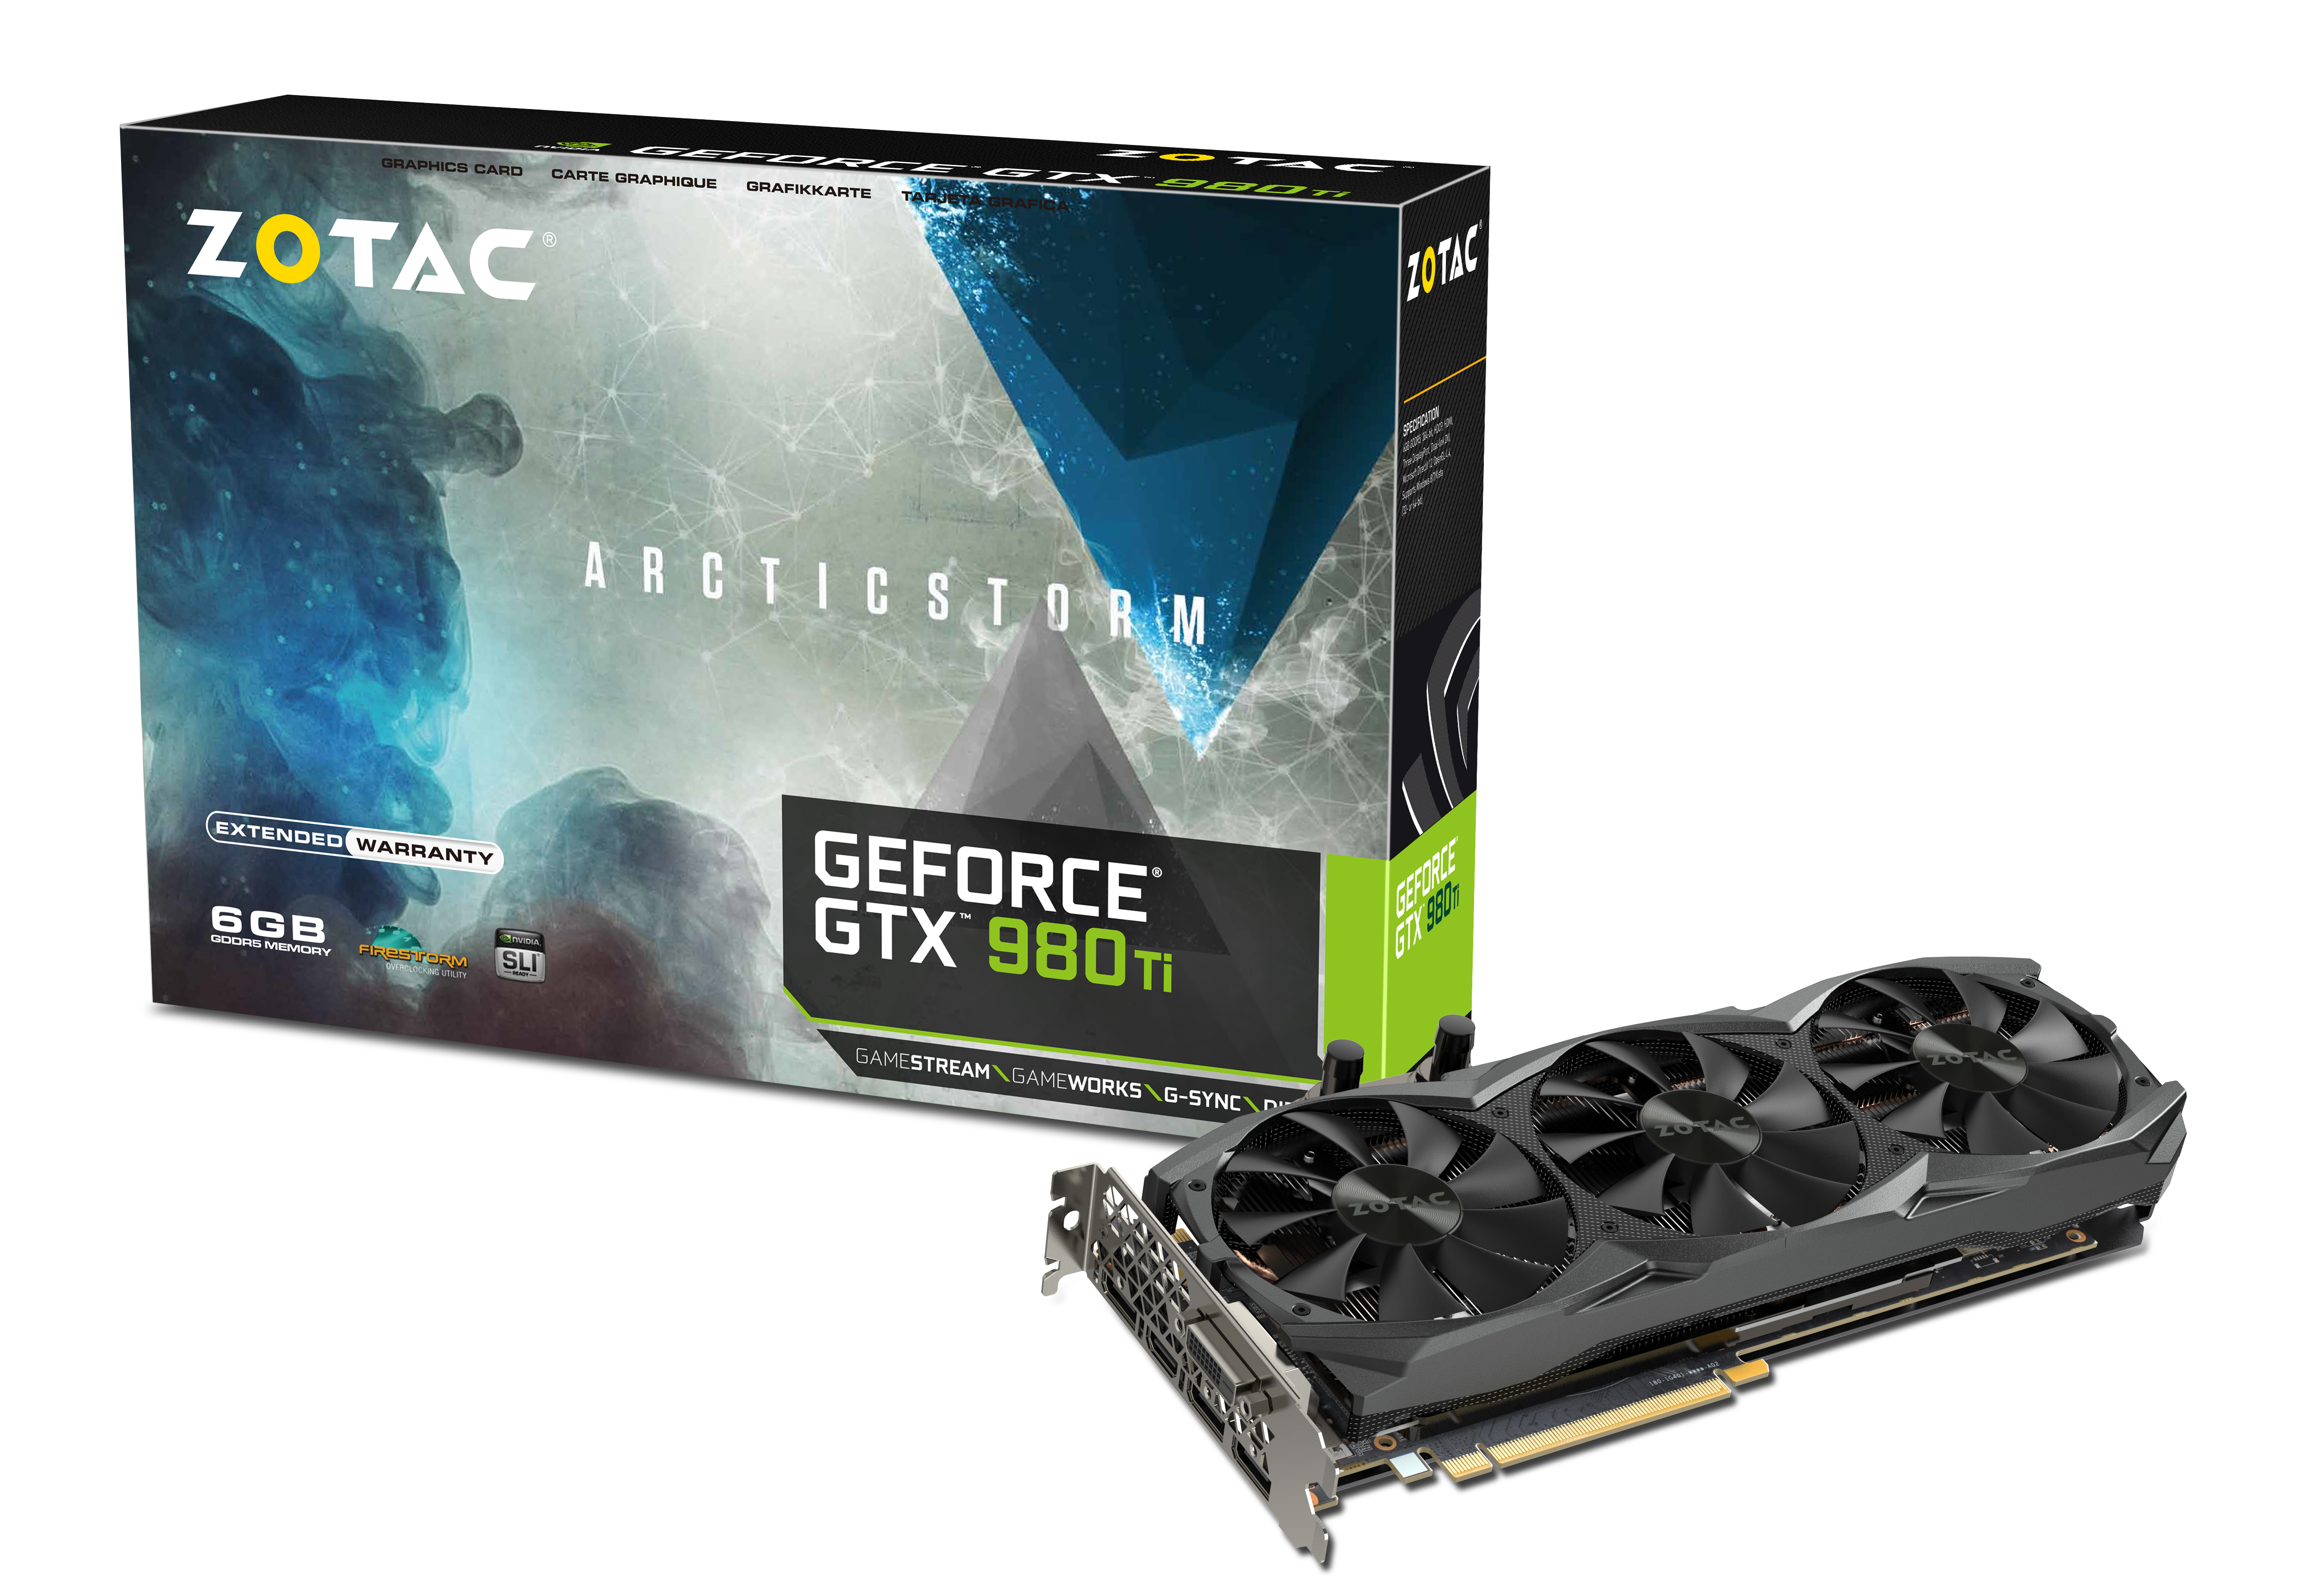 GeForce® GTX 980 Ti ArcticStorm | ZOTAC